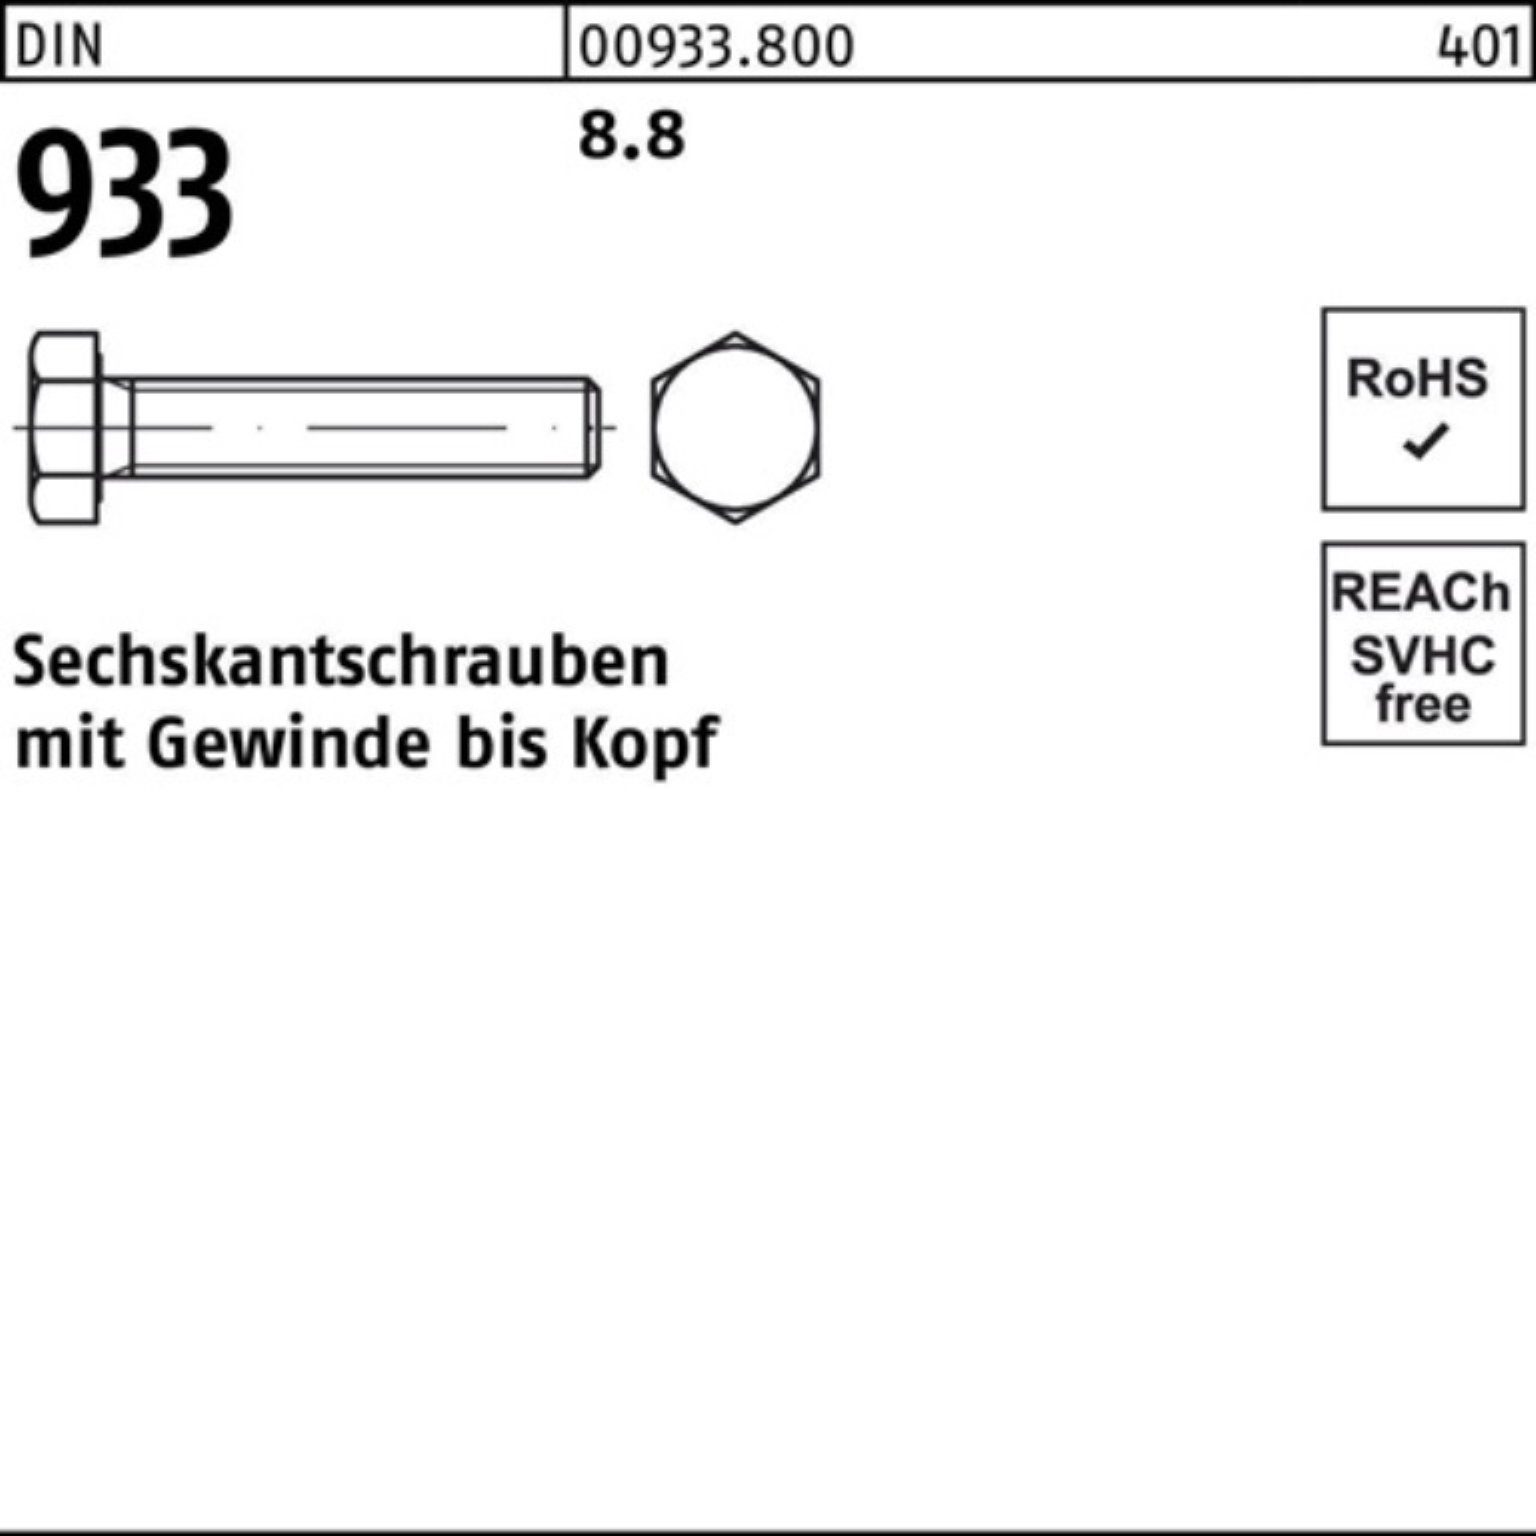 Sechskantschraube Sechskantschraube Stück 130 8.8 933 933 100er DIN DIN VG Pack M24x 1 Reyher